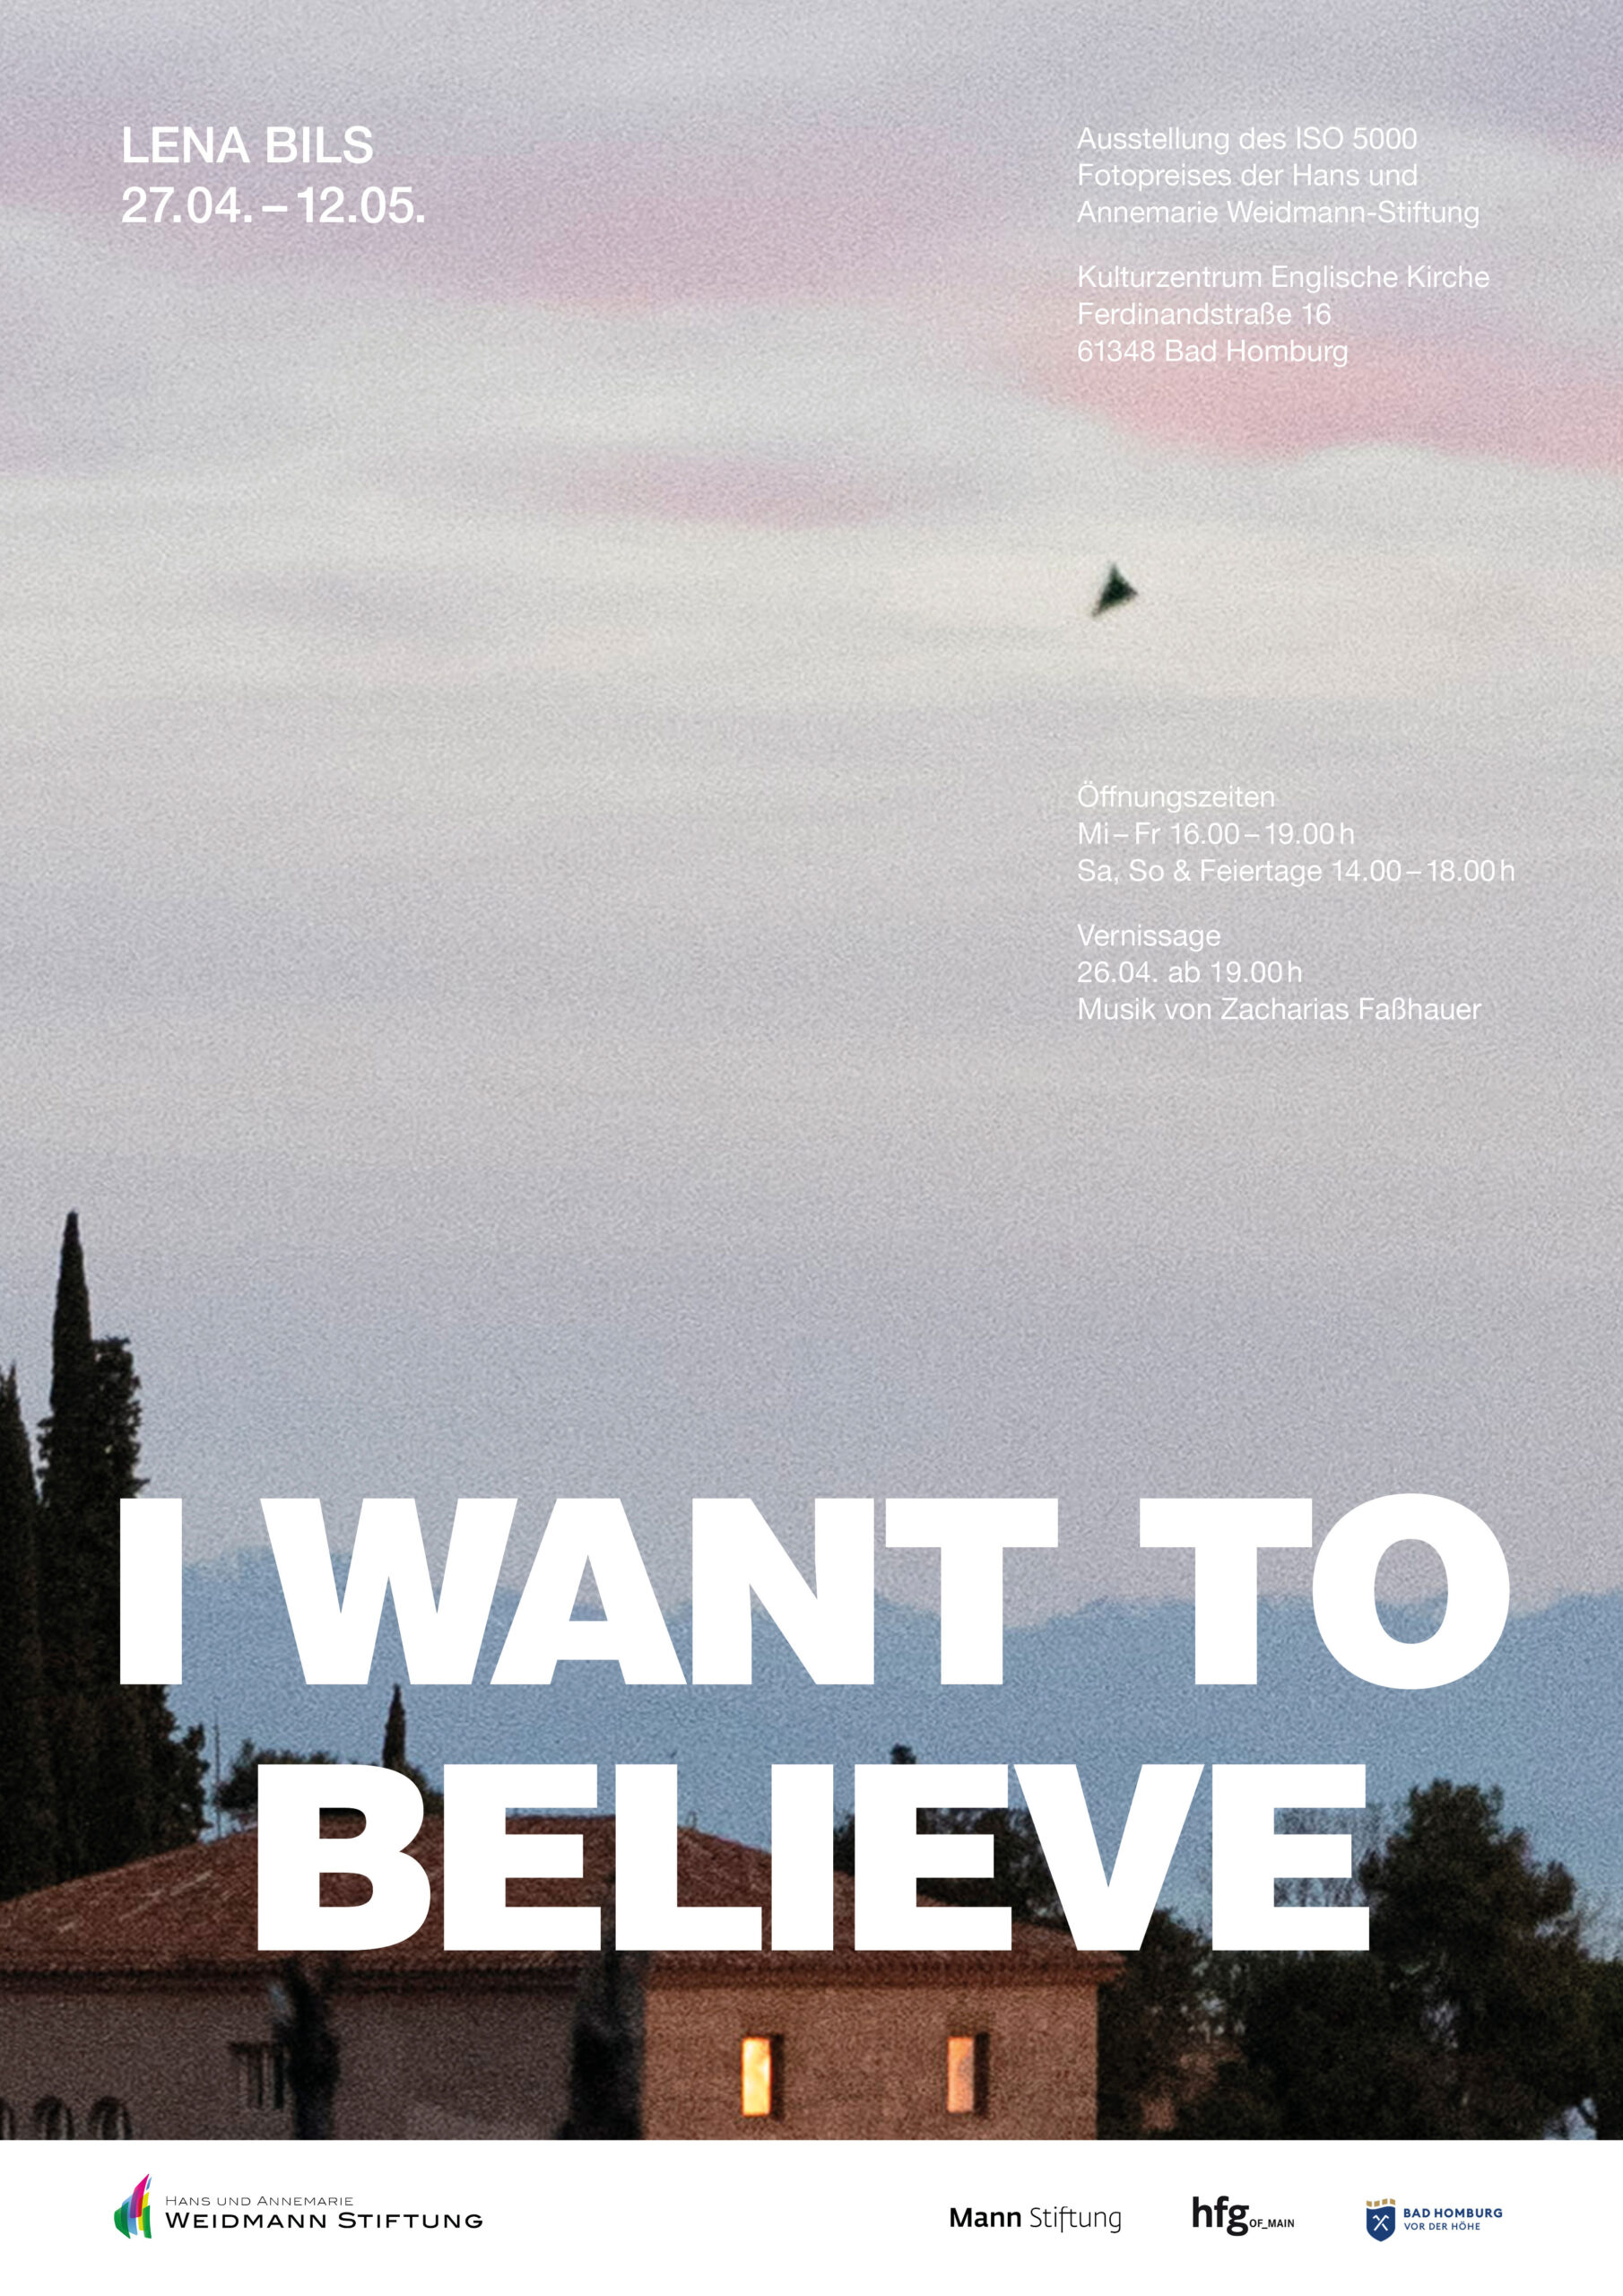 "I want to believe”, Ausstellung von Lena Bils, ISO5000 Preis 2024 der Hans und Annemarie Weidmann-Stiftung. Vernissage am 26.04.24, ab 19:00